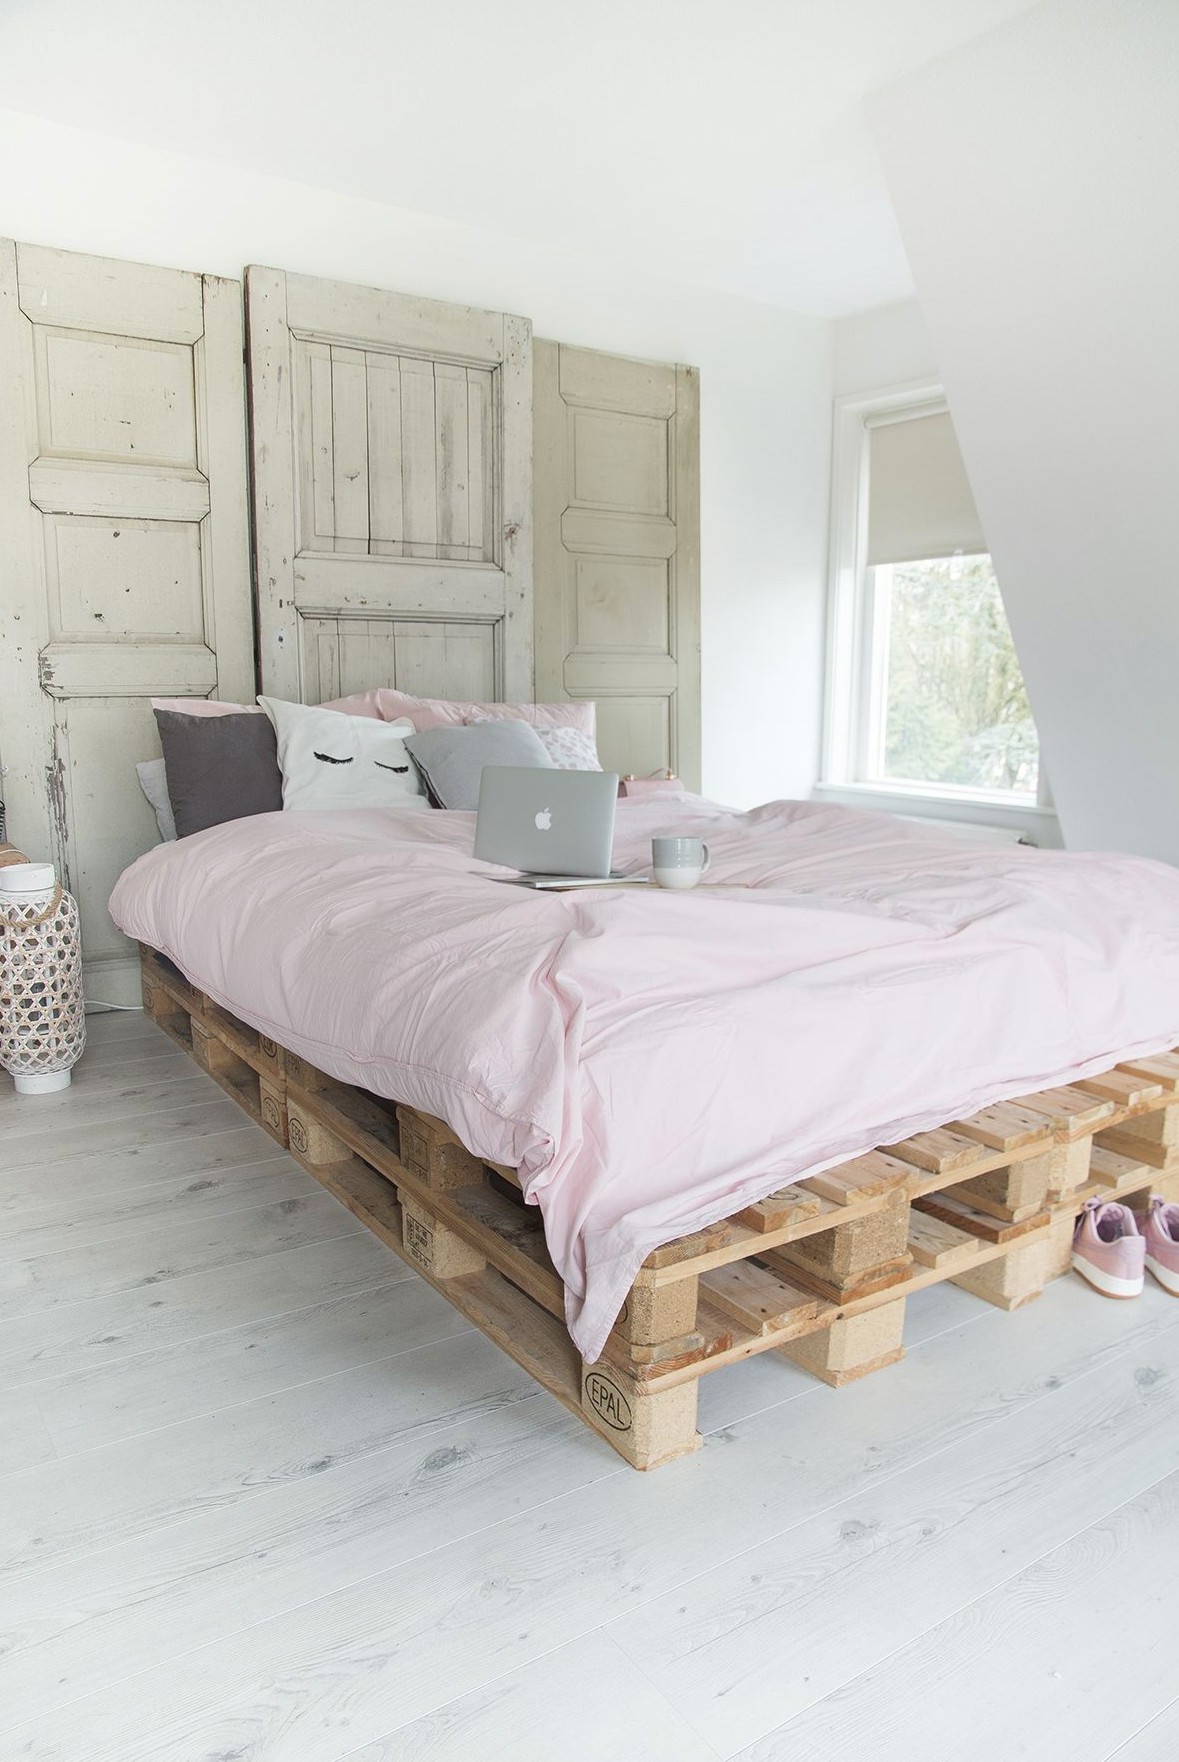 Hướng dẫn cách tự làm giường ngủ pallet đơn giản tại nhà